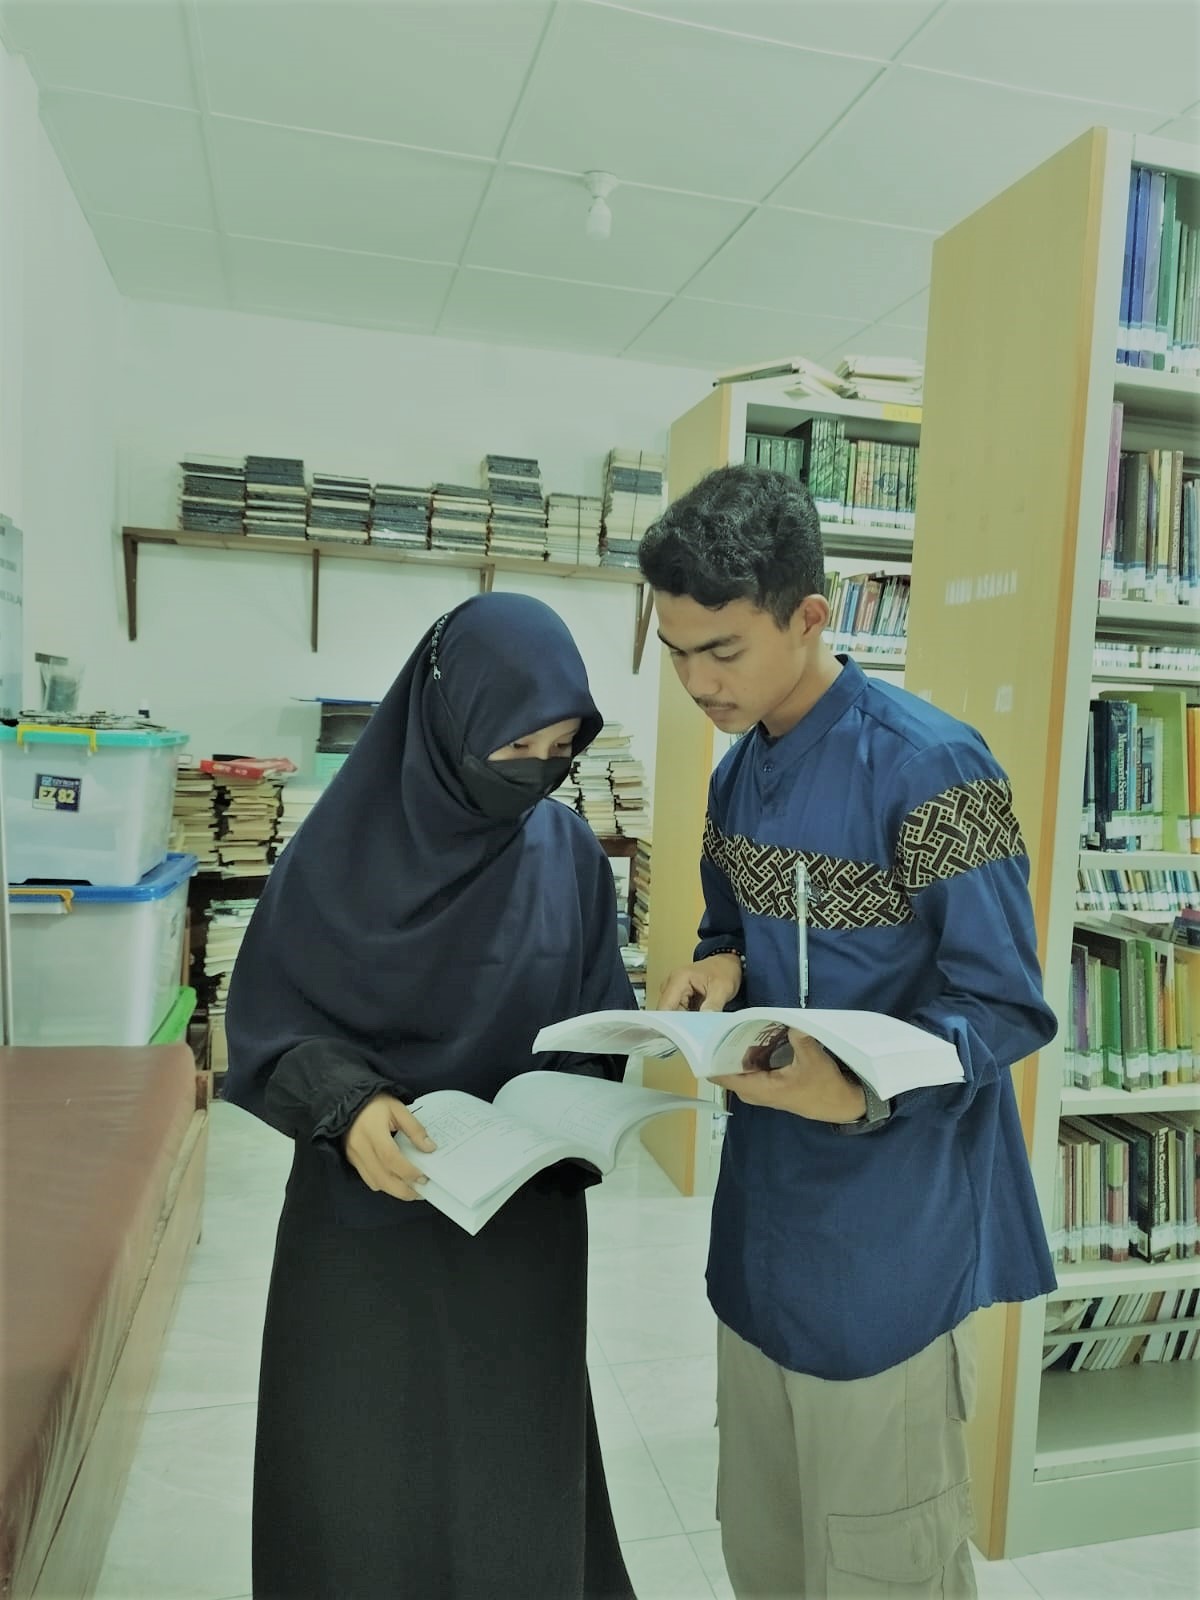 Foto Dokumentasi Suhardi Evaluasi Dalam Pendidikan Islam